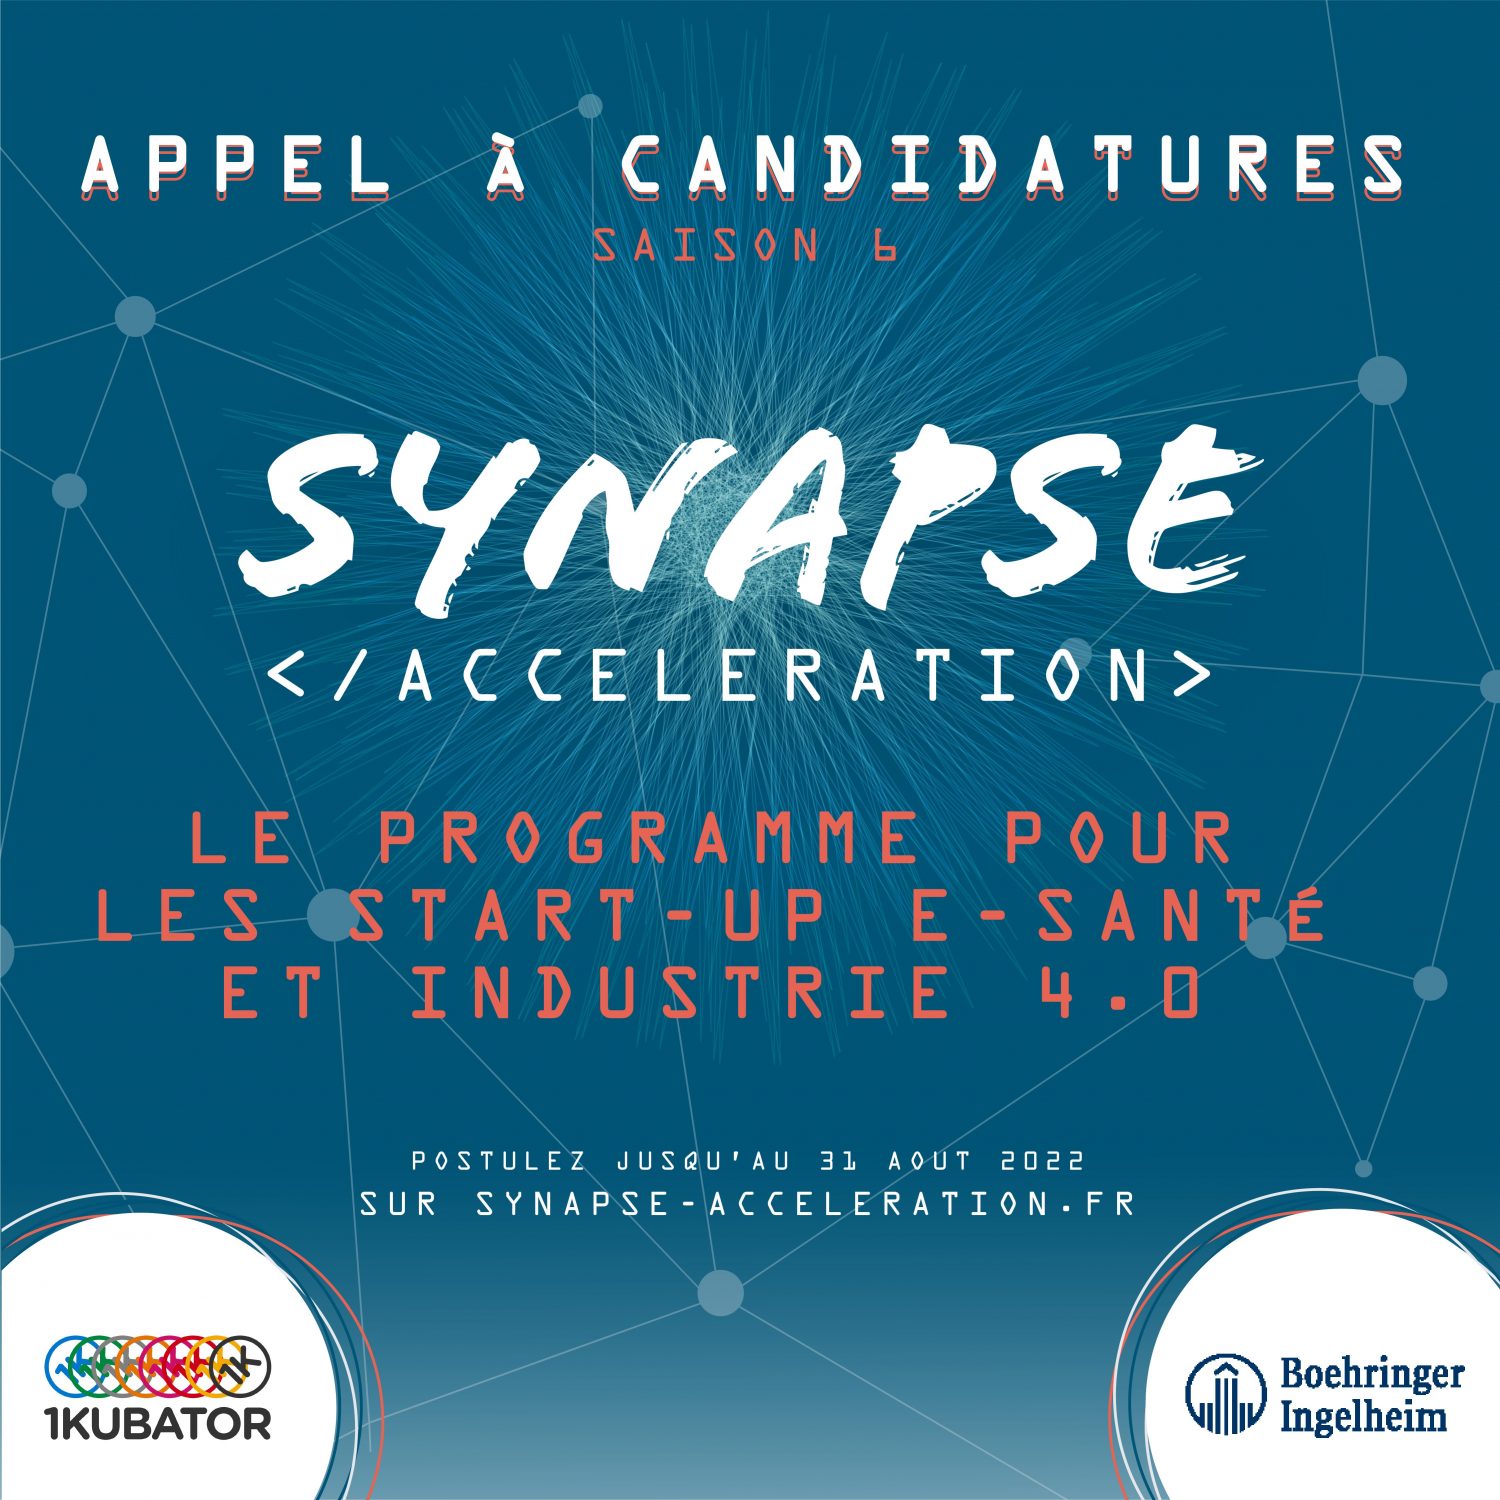 Logo de la startup Boehringer Ingelheim recrute pour son programme : Synapse Accélération en partenariat avec 1Kubator !